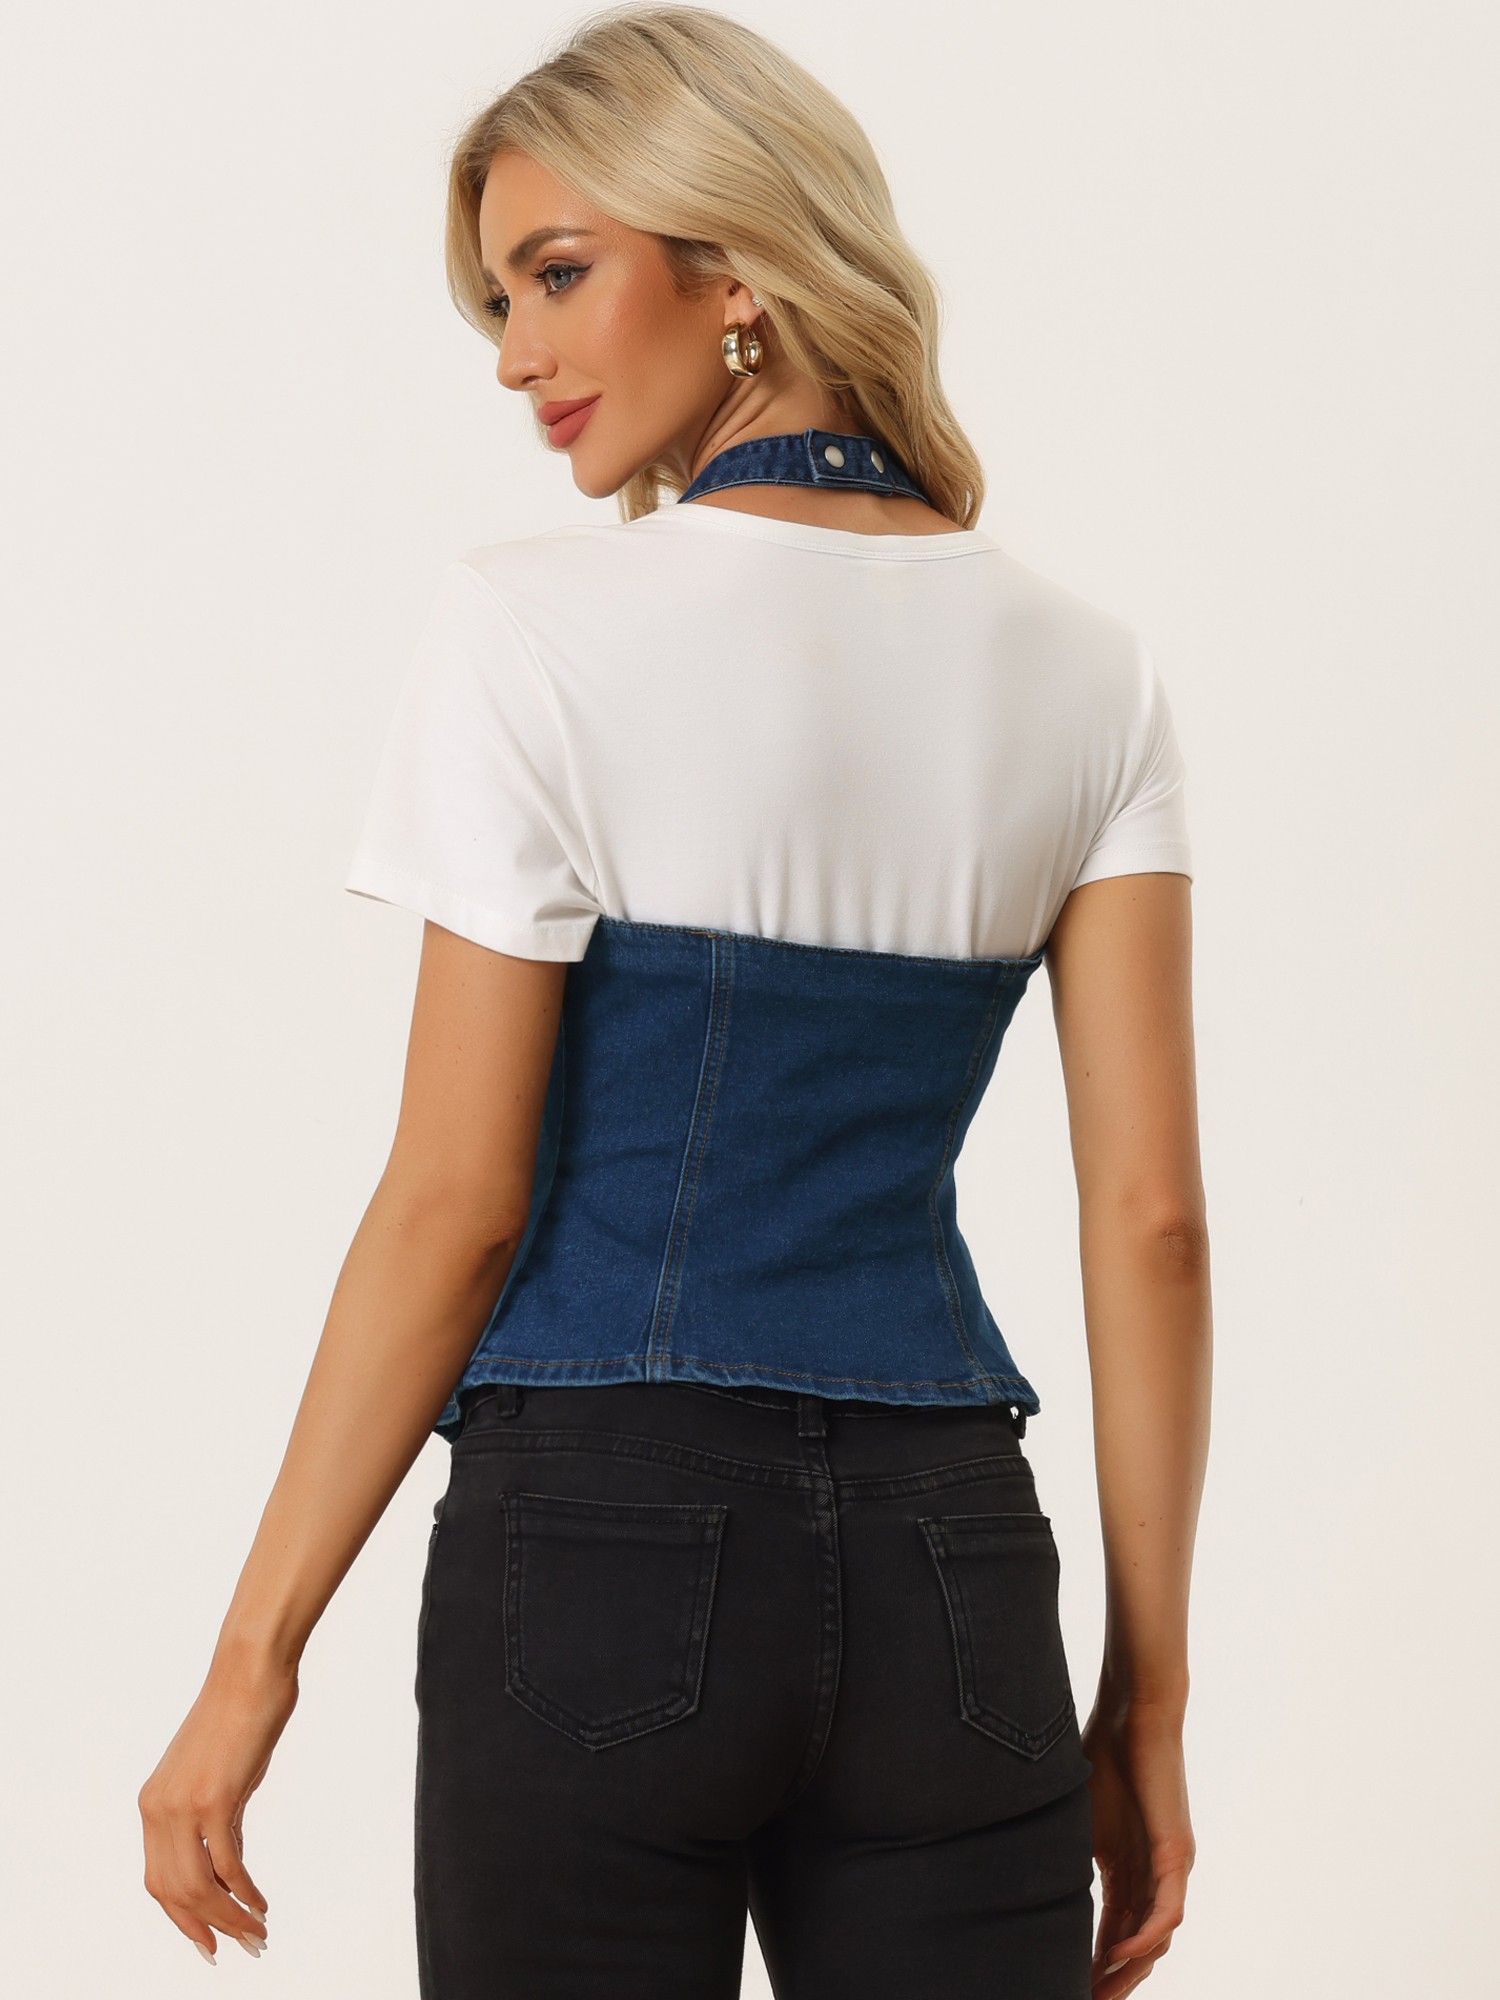 Unique Bargains Casual Denim Vest for Women's Halter Neck Button Down Backless Jean Waistcoat